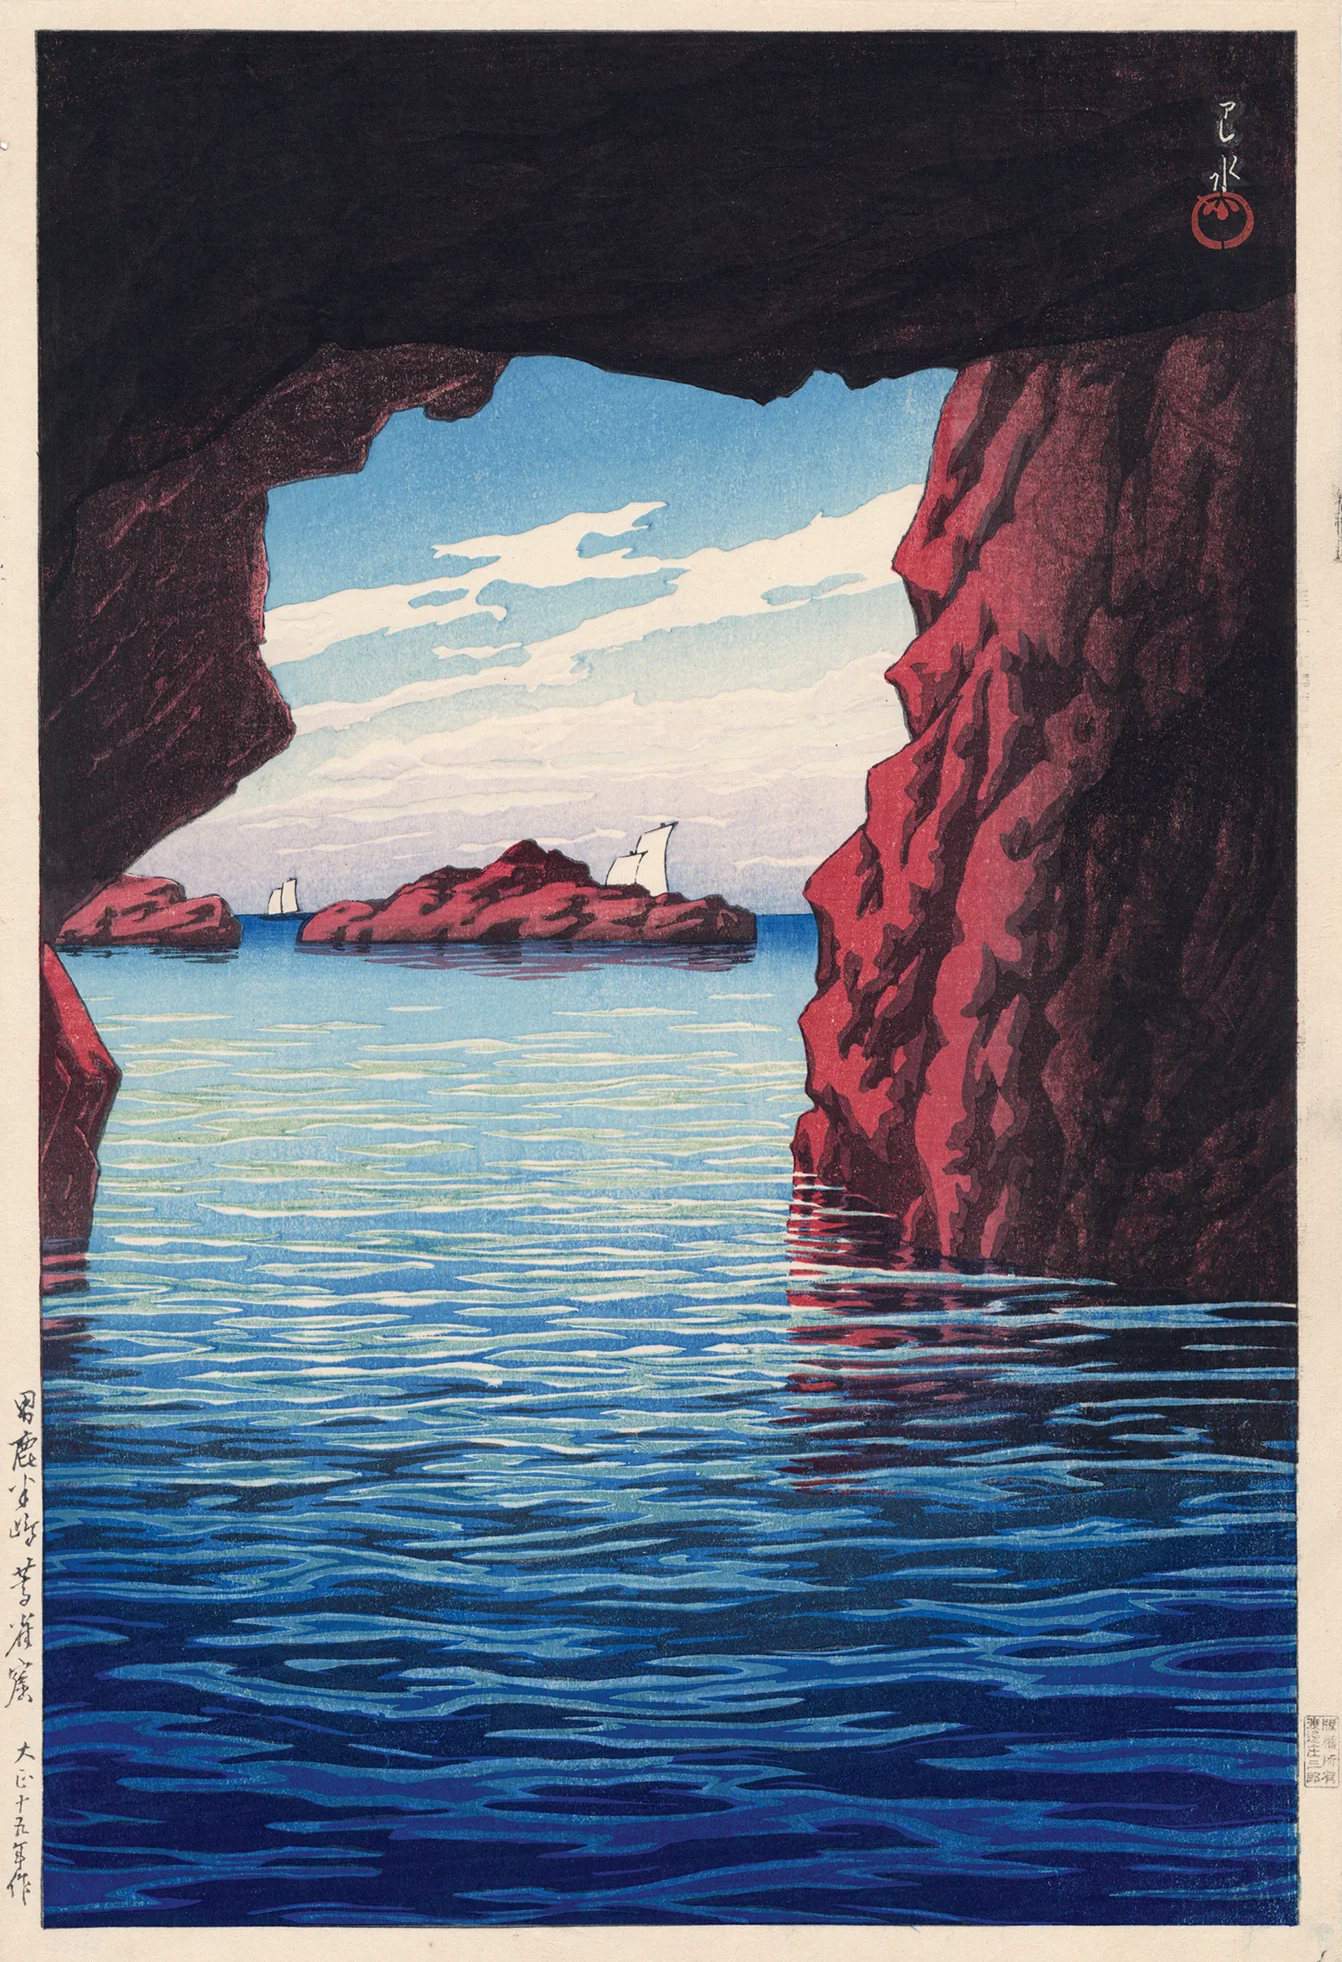 Kojaku Cavern, Oga Peninsula - Kawase Hasui Catalogue woodblock print